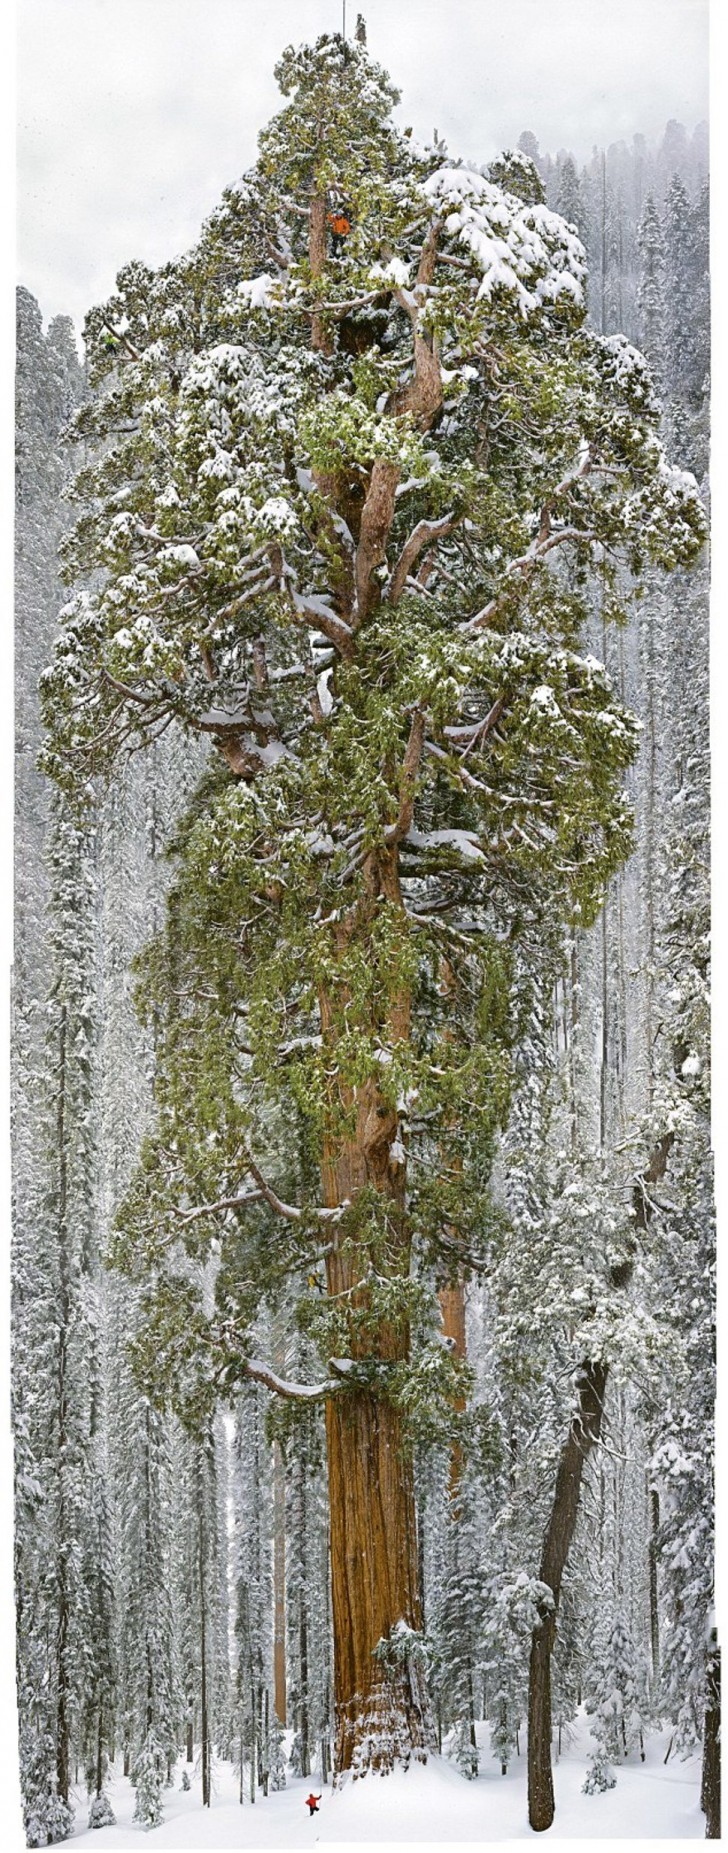 Il lavoro ha richiesto 32 giorni e lo scatto di 126 fotografie, che sono state poi unite per formare la struttura completa di questo albero da record.